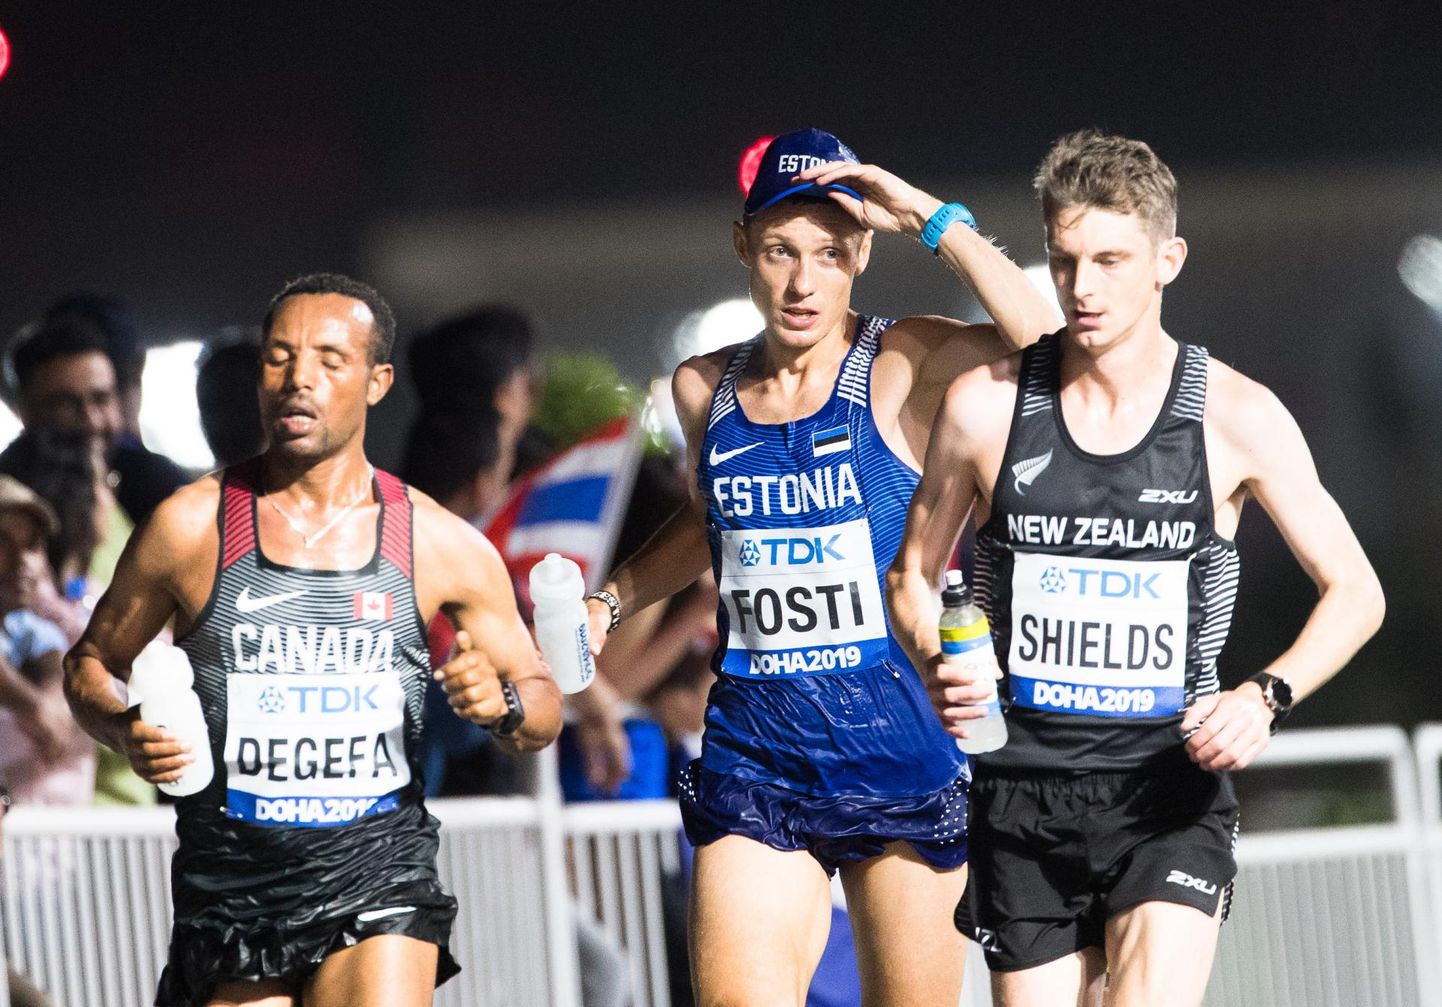 Roman Fosti leidis Doha maratonirajal mõnusa pundi, kus sai koos kahe uusmeremaalasega sobivas tempos kilomeetreid neelata.